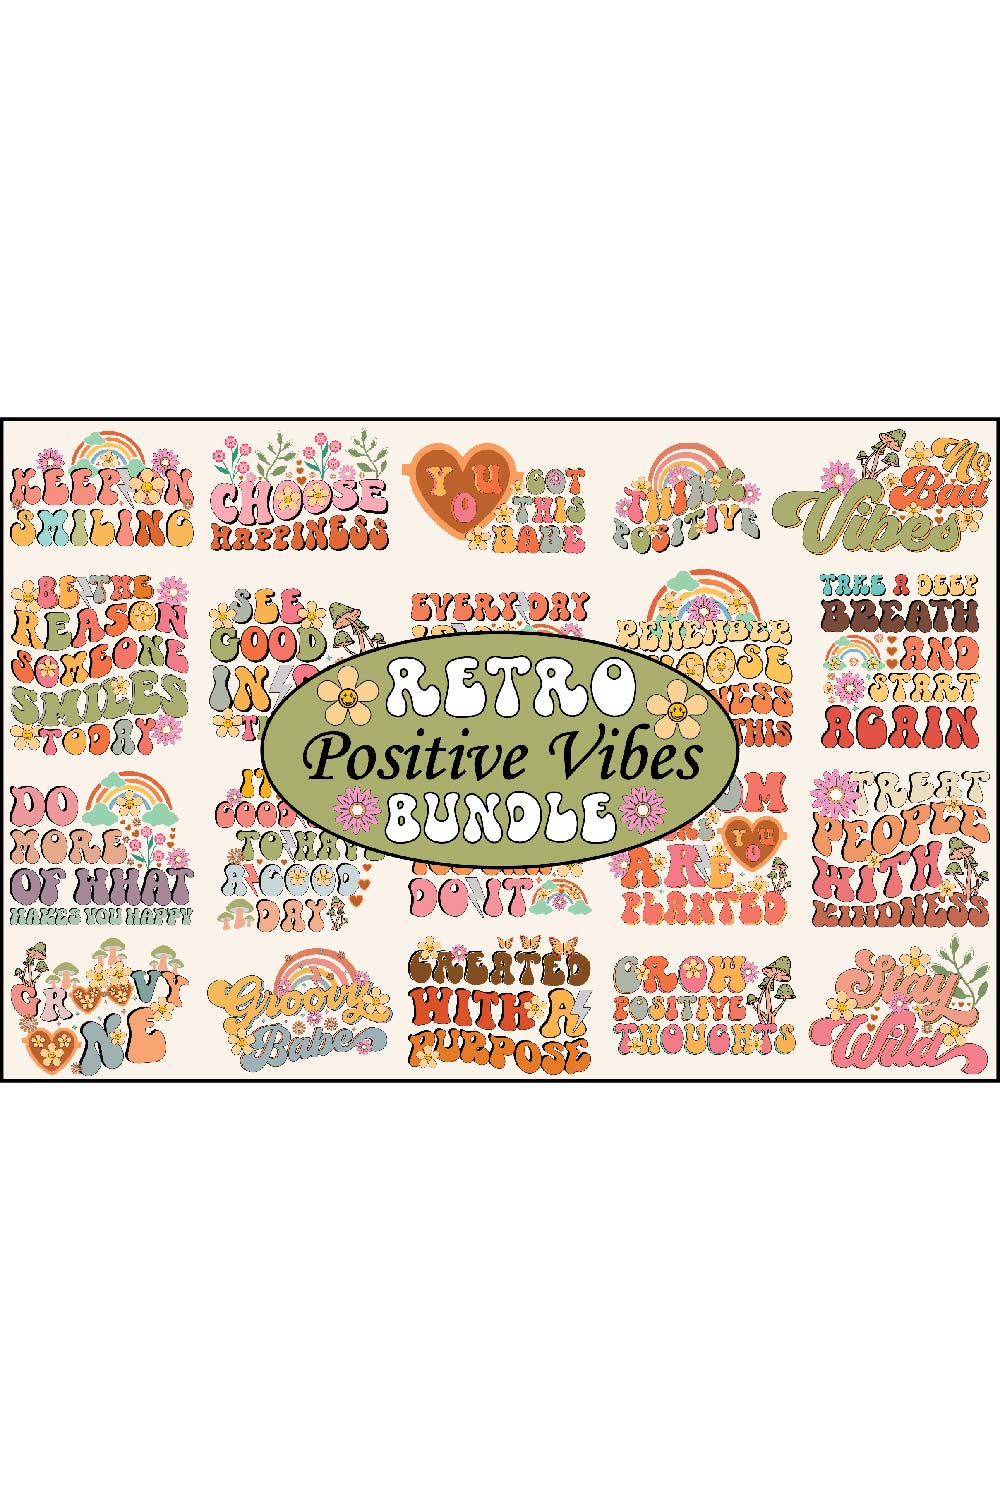 Retro Positive Vibes Bundle pinterest preview image.